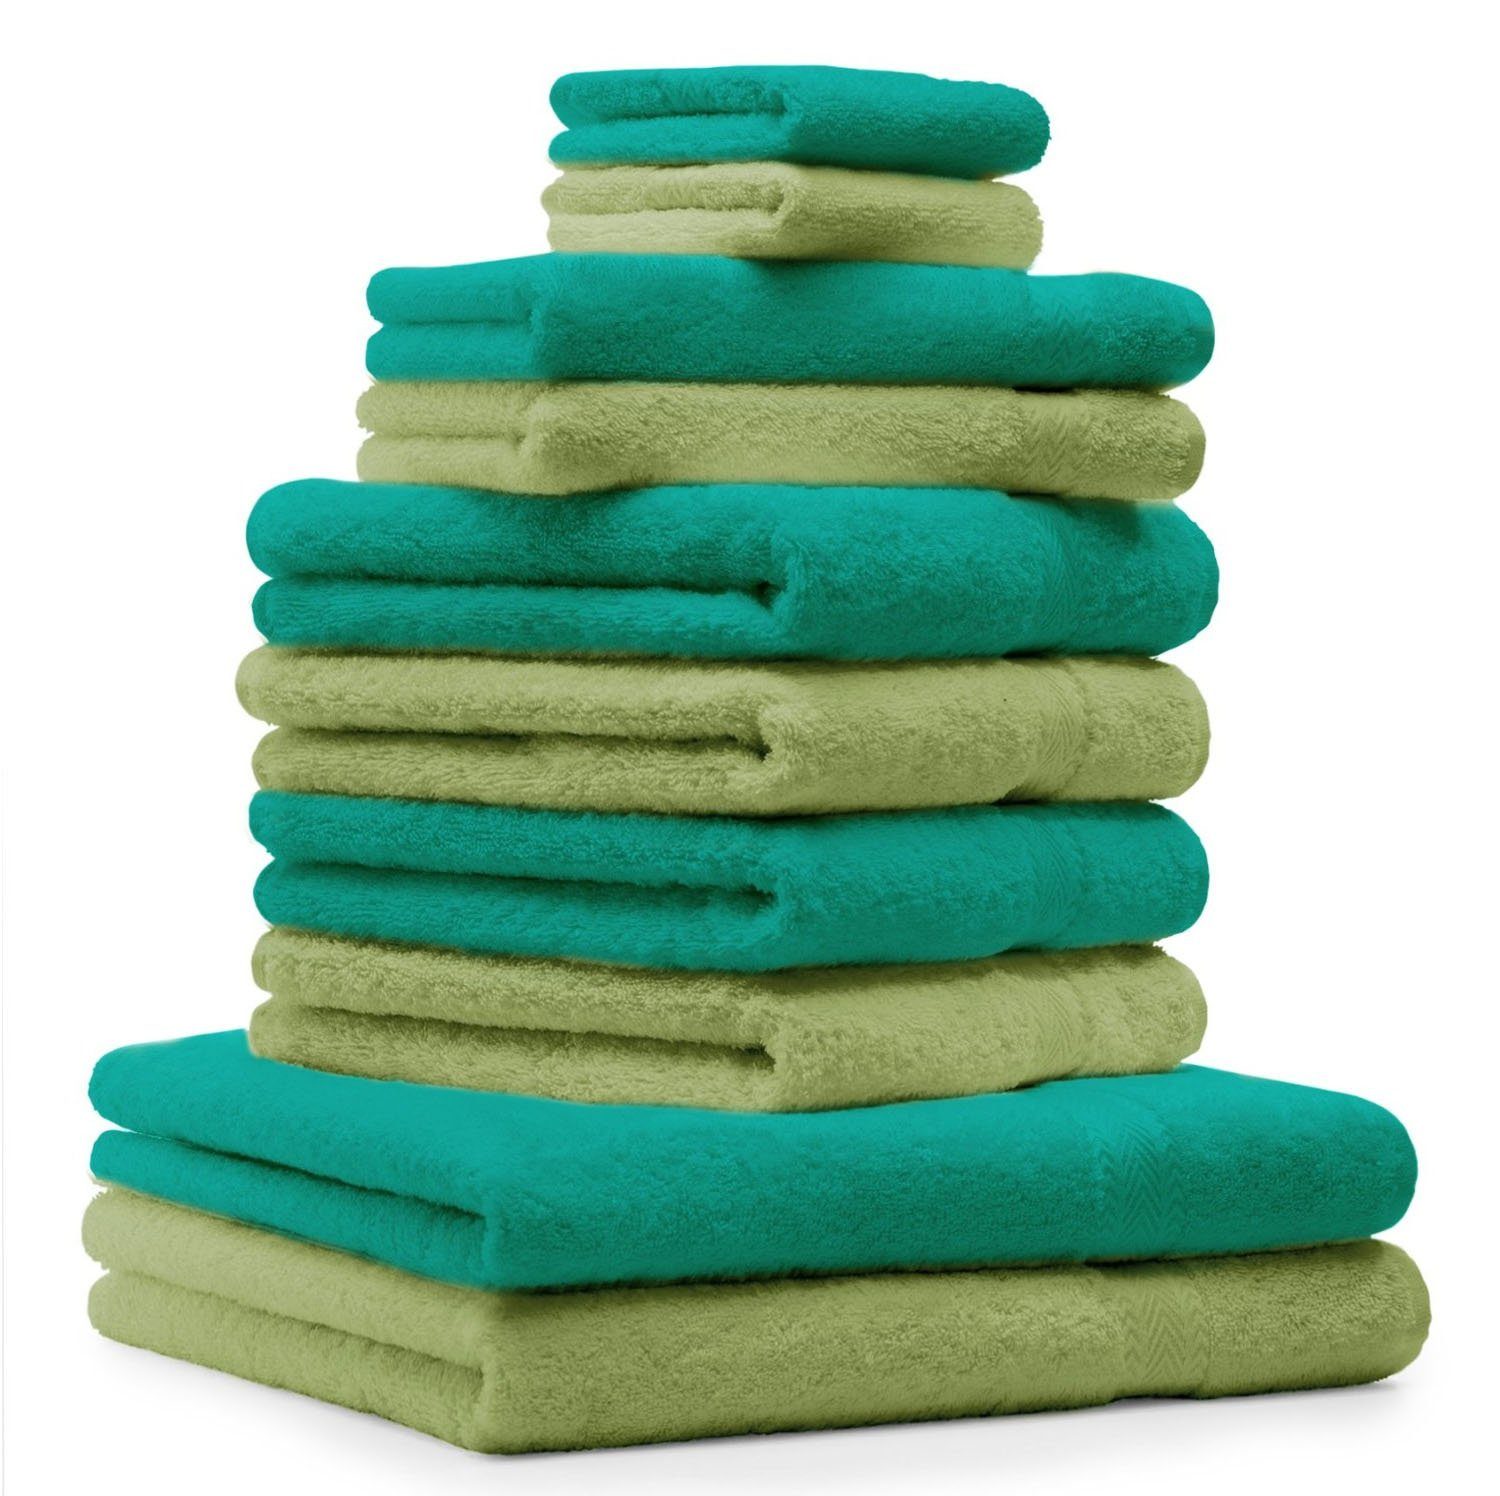 Betz Handtuch Set 10-tlg. Handtuch-Set Premium Farbe Smaragdgrün & Apfelgrün, 100% Baumwolle